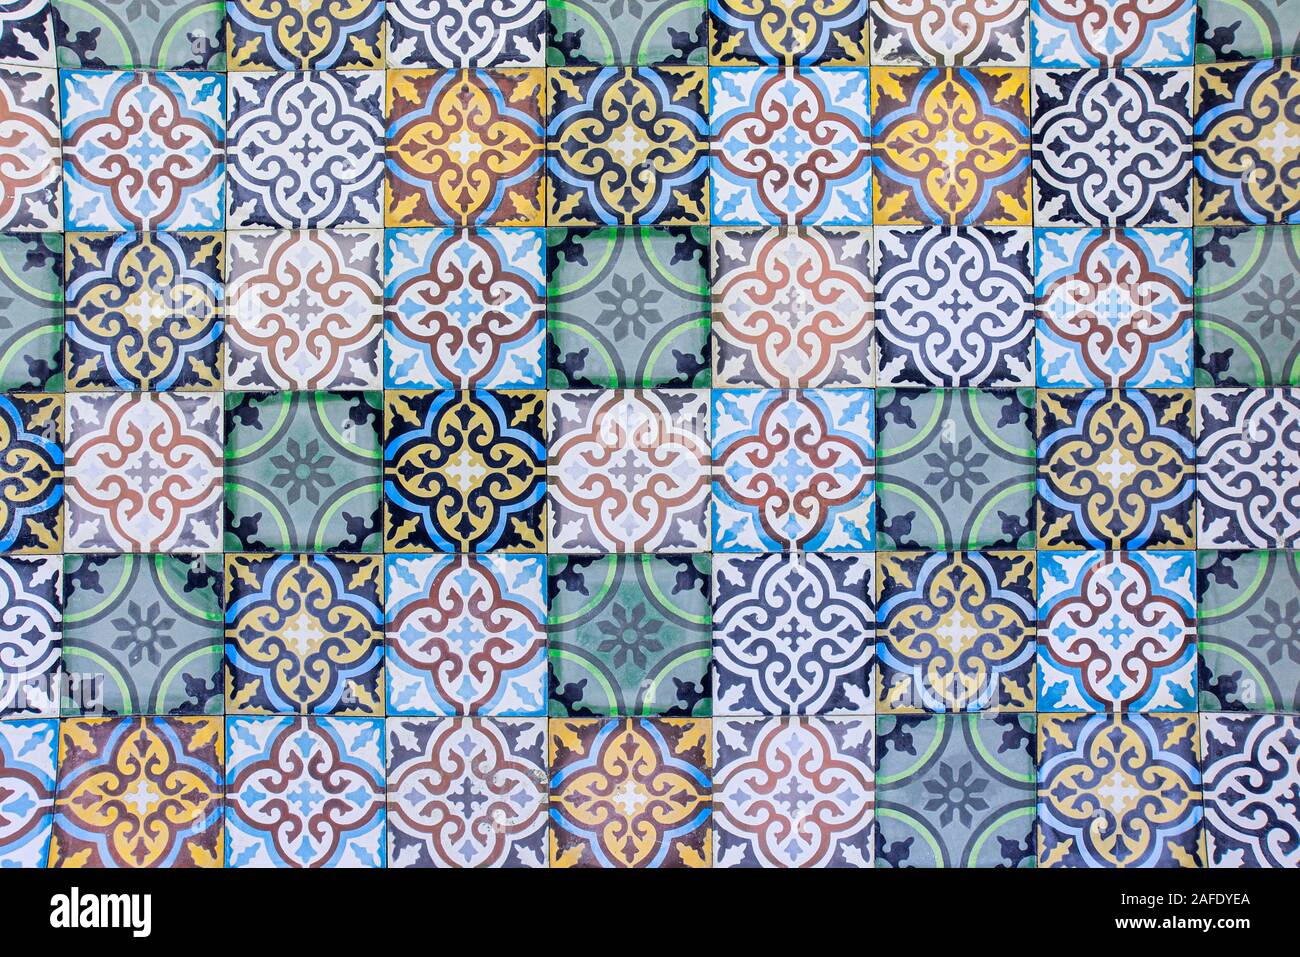 Carreaux marocain avec motifs arabes traditionnels, carreaux de céramique comme texture d'arrière-plan Banque D'Images